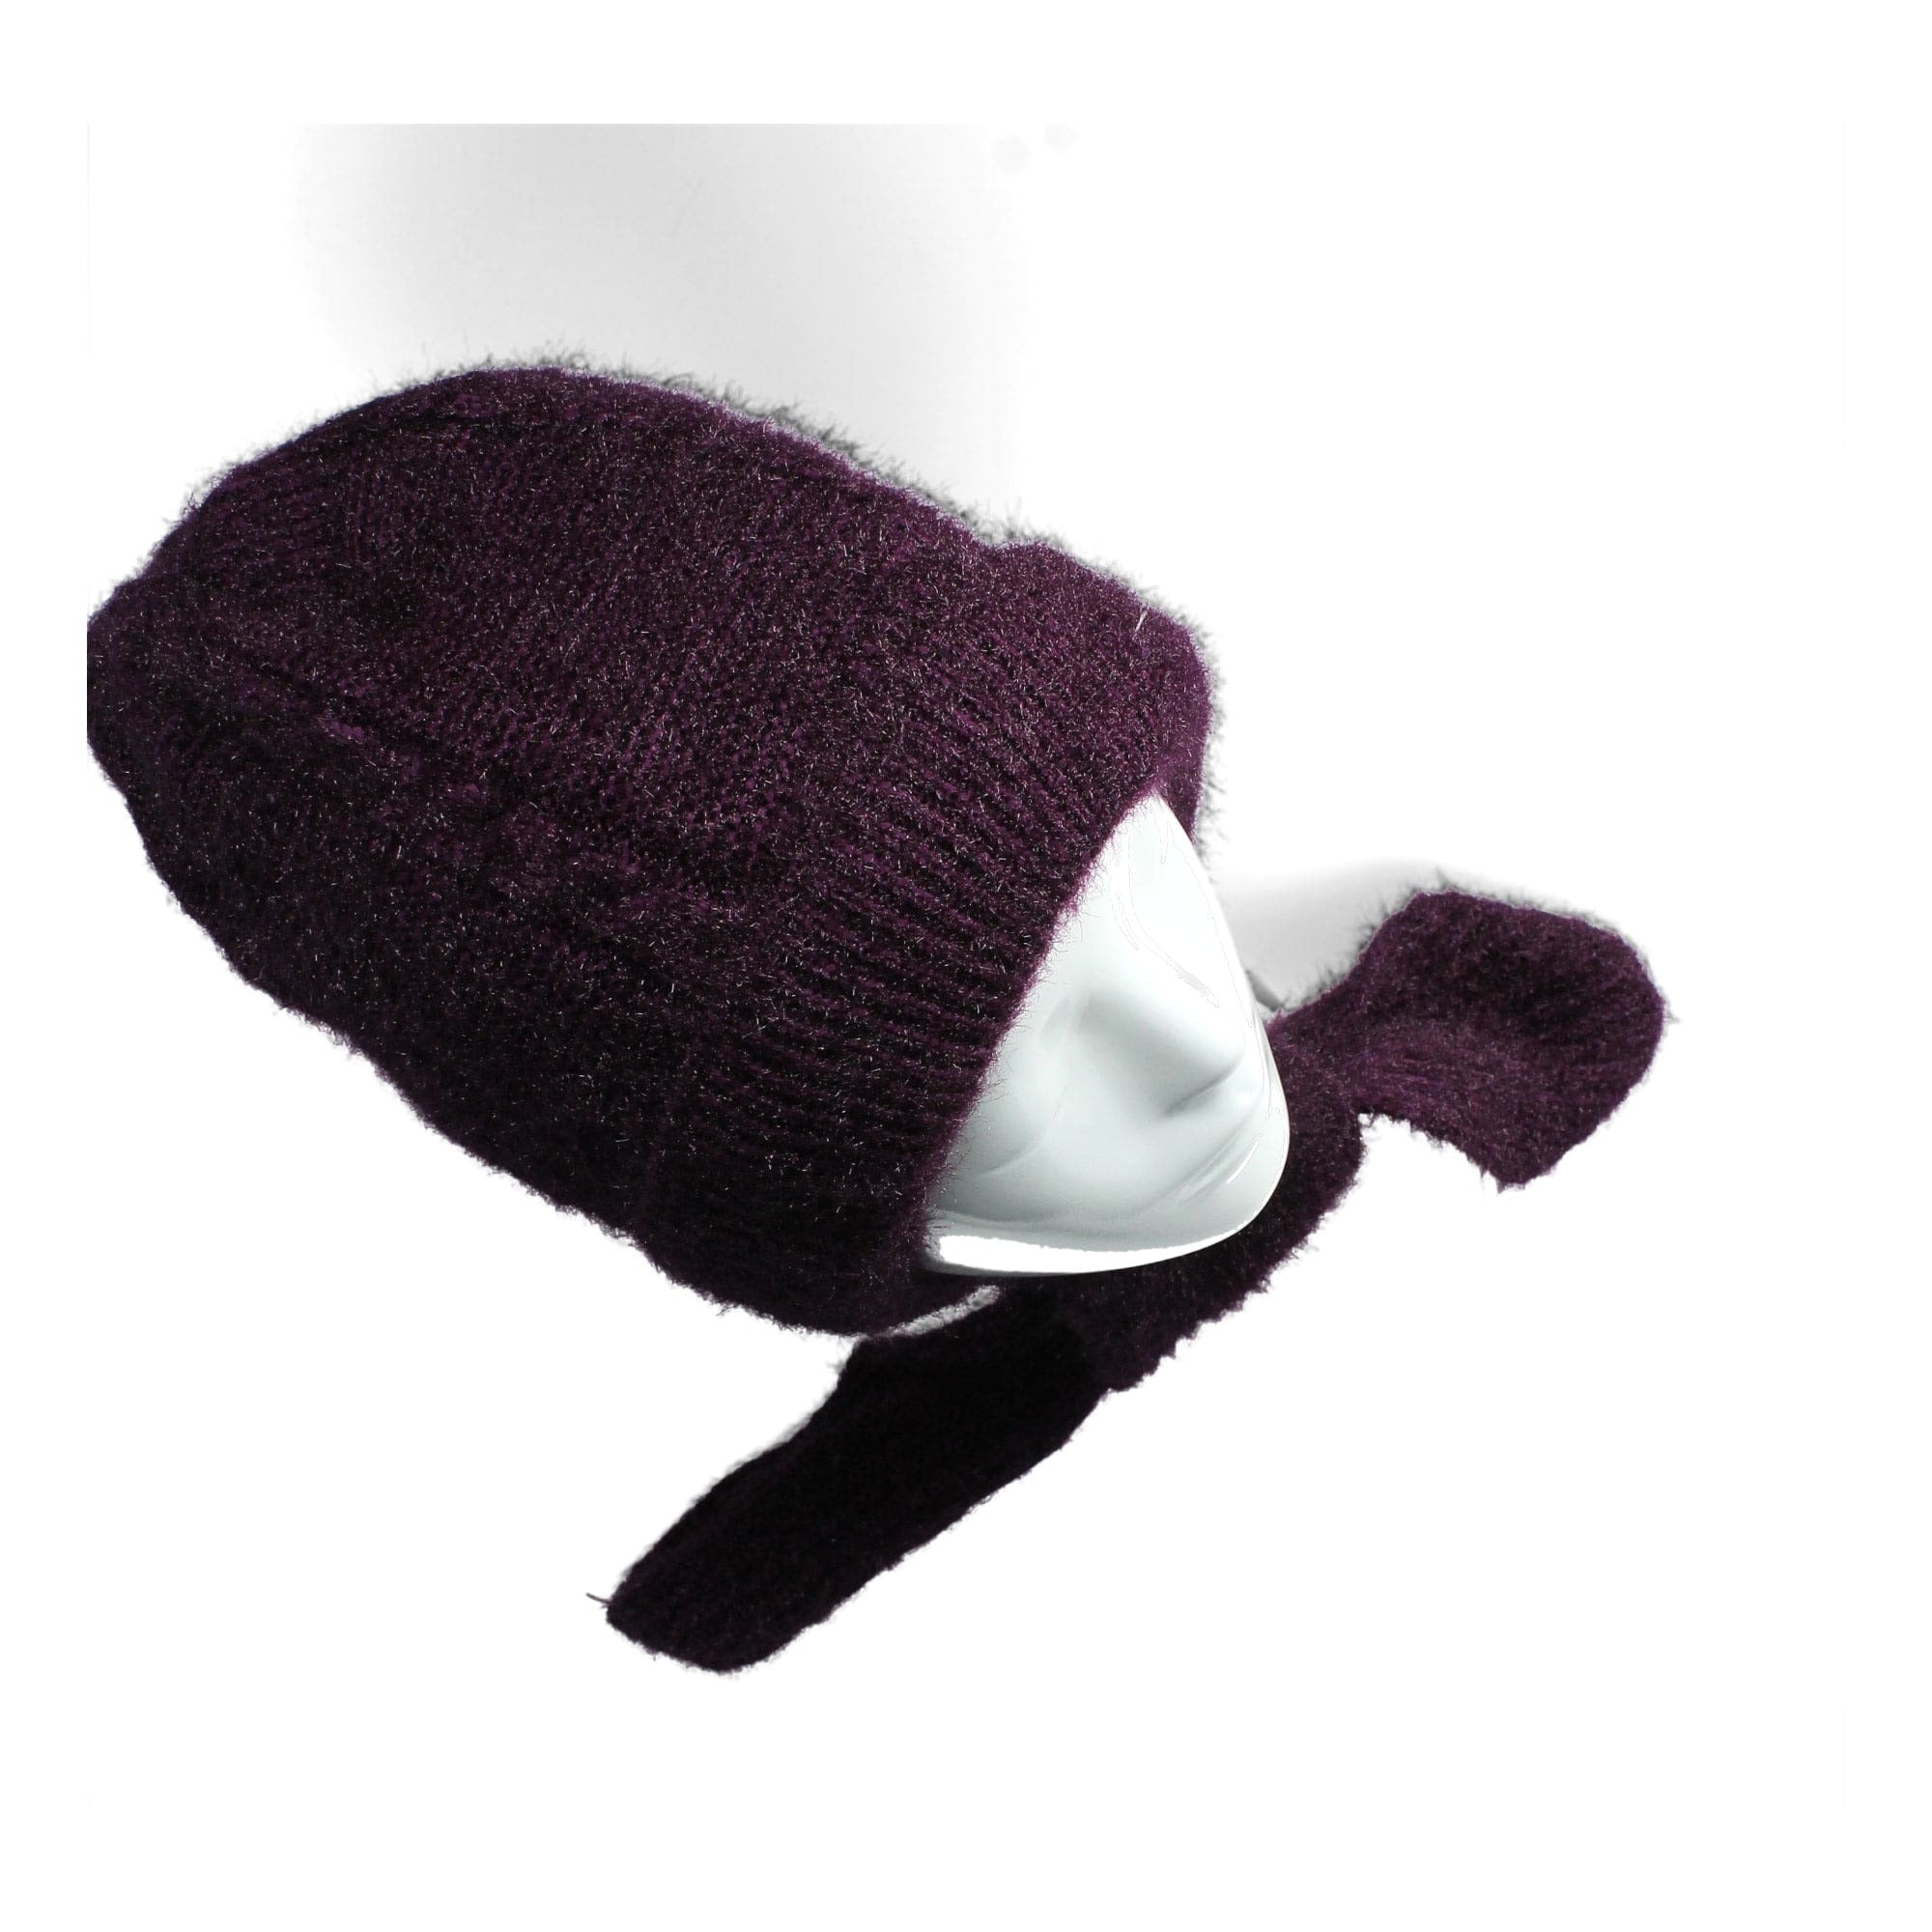 Exclusiva bufanda con capucha - Sombreros